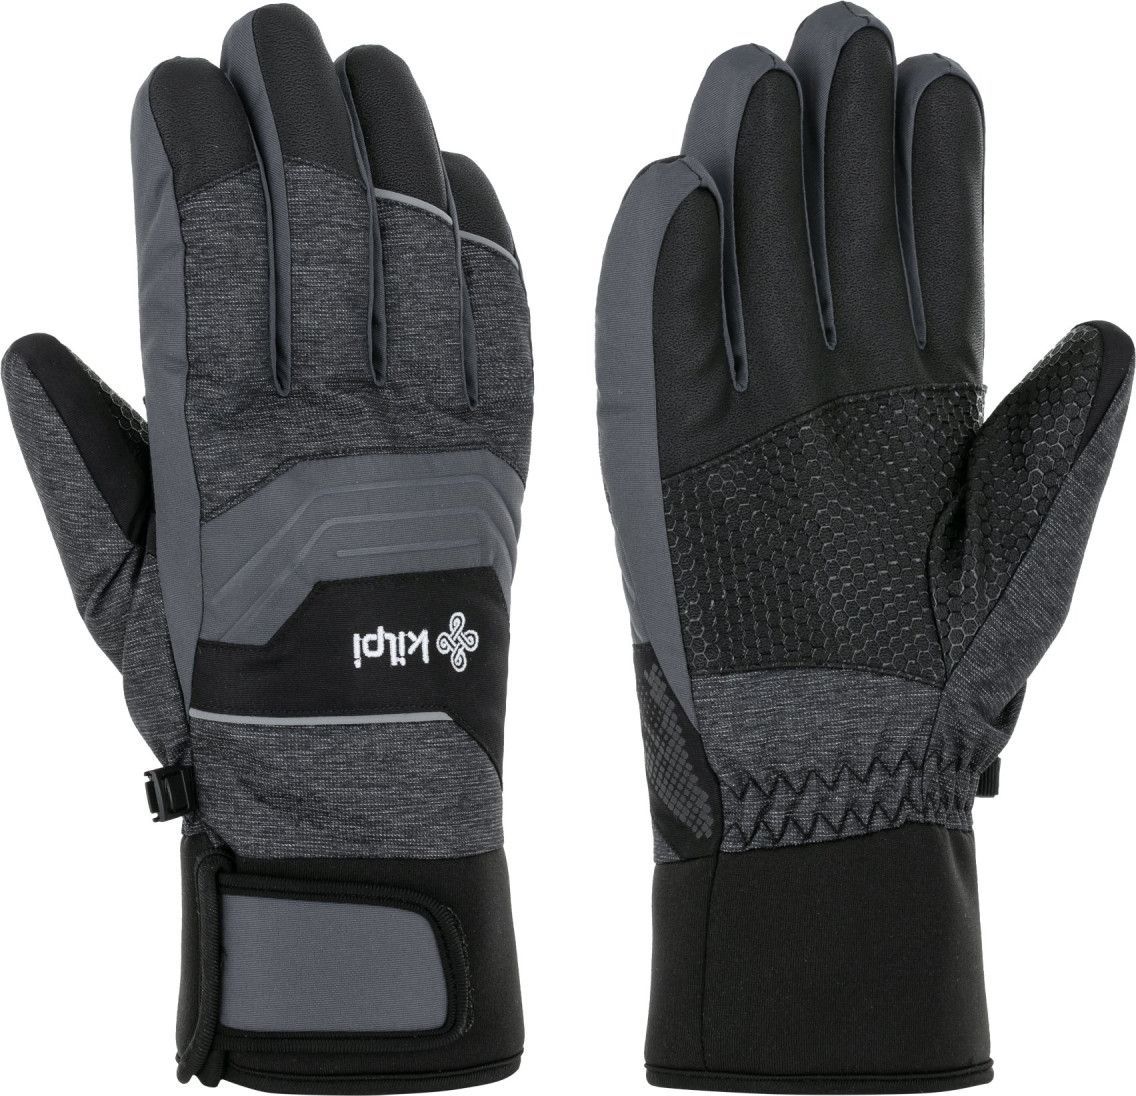 Unisex lyžařské rukavice KILPI Skimi tmavš šedé Velikost: XL